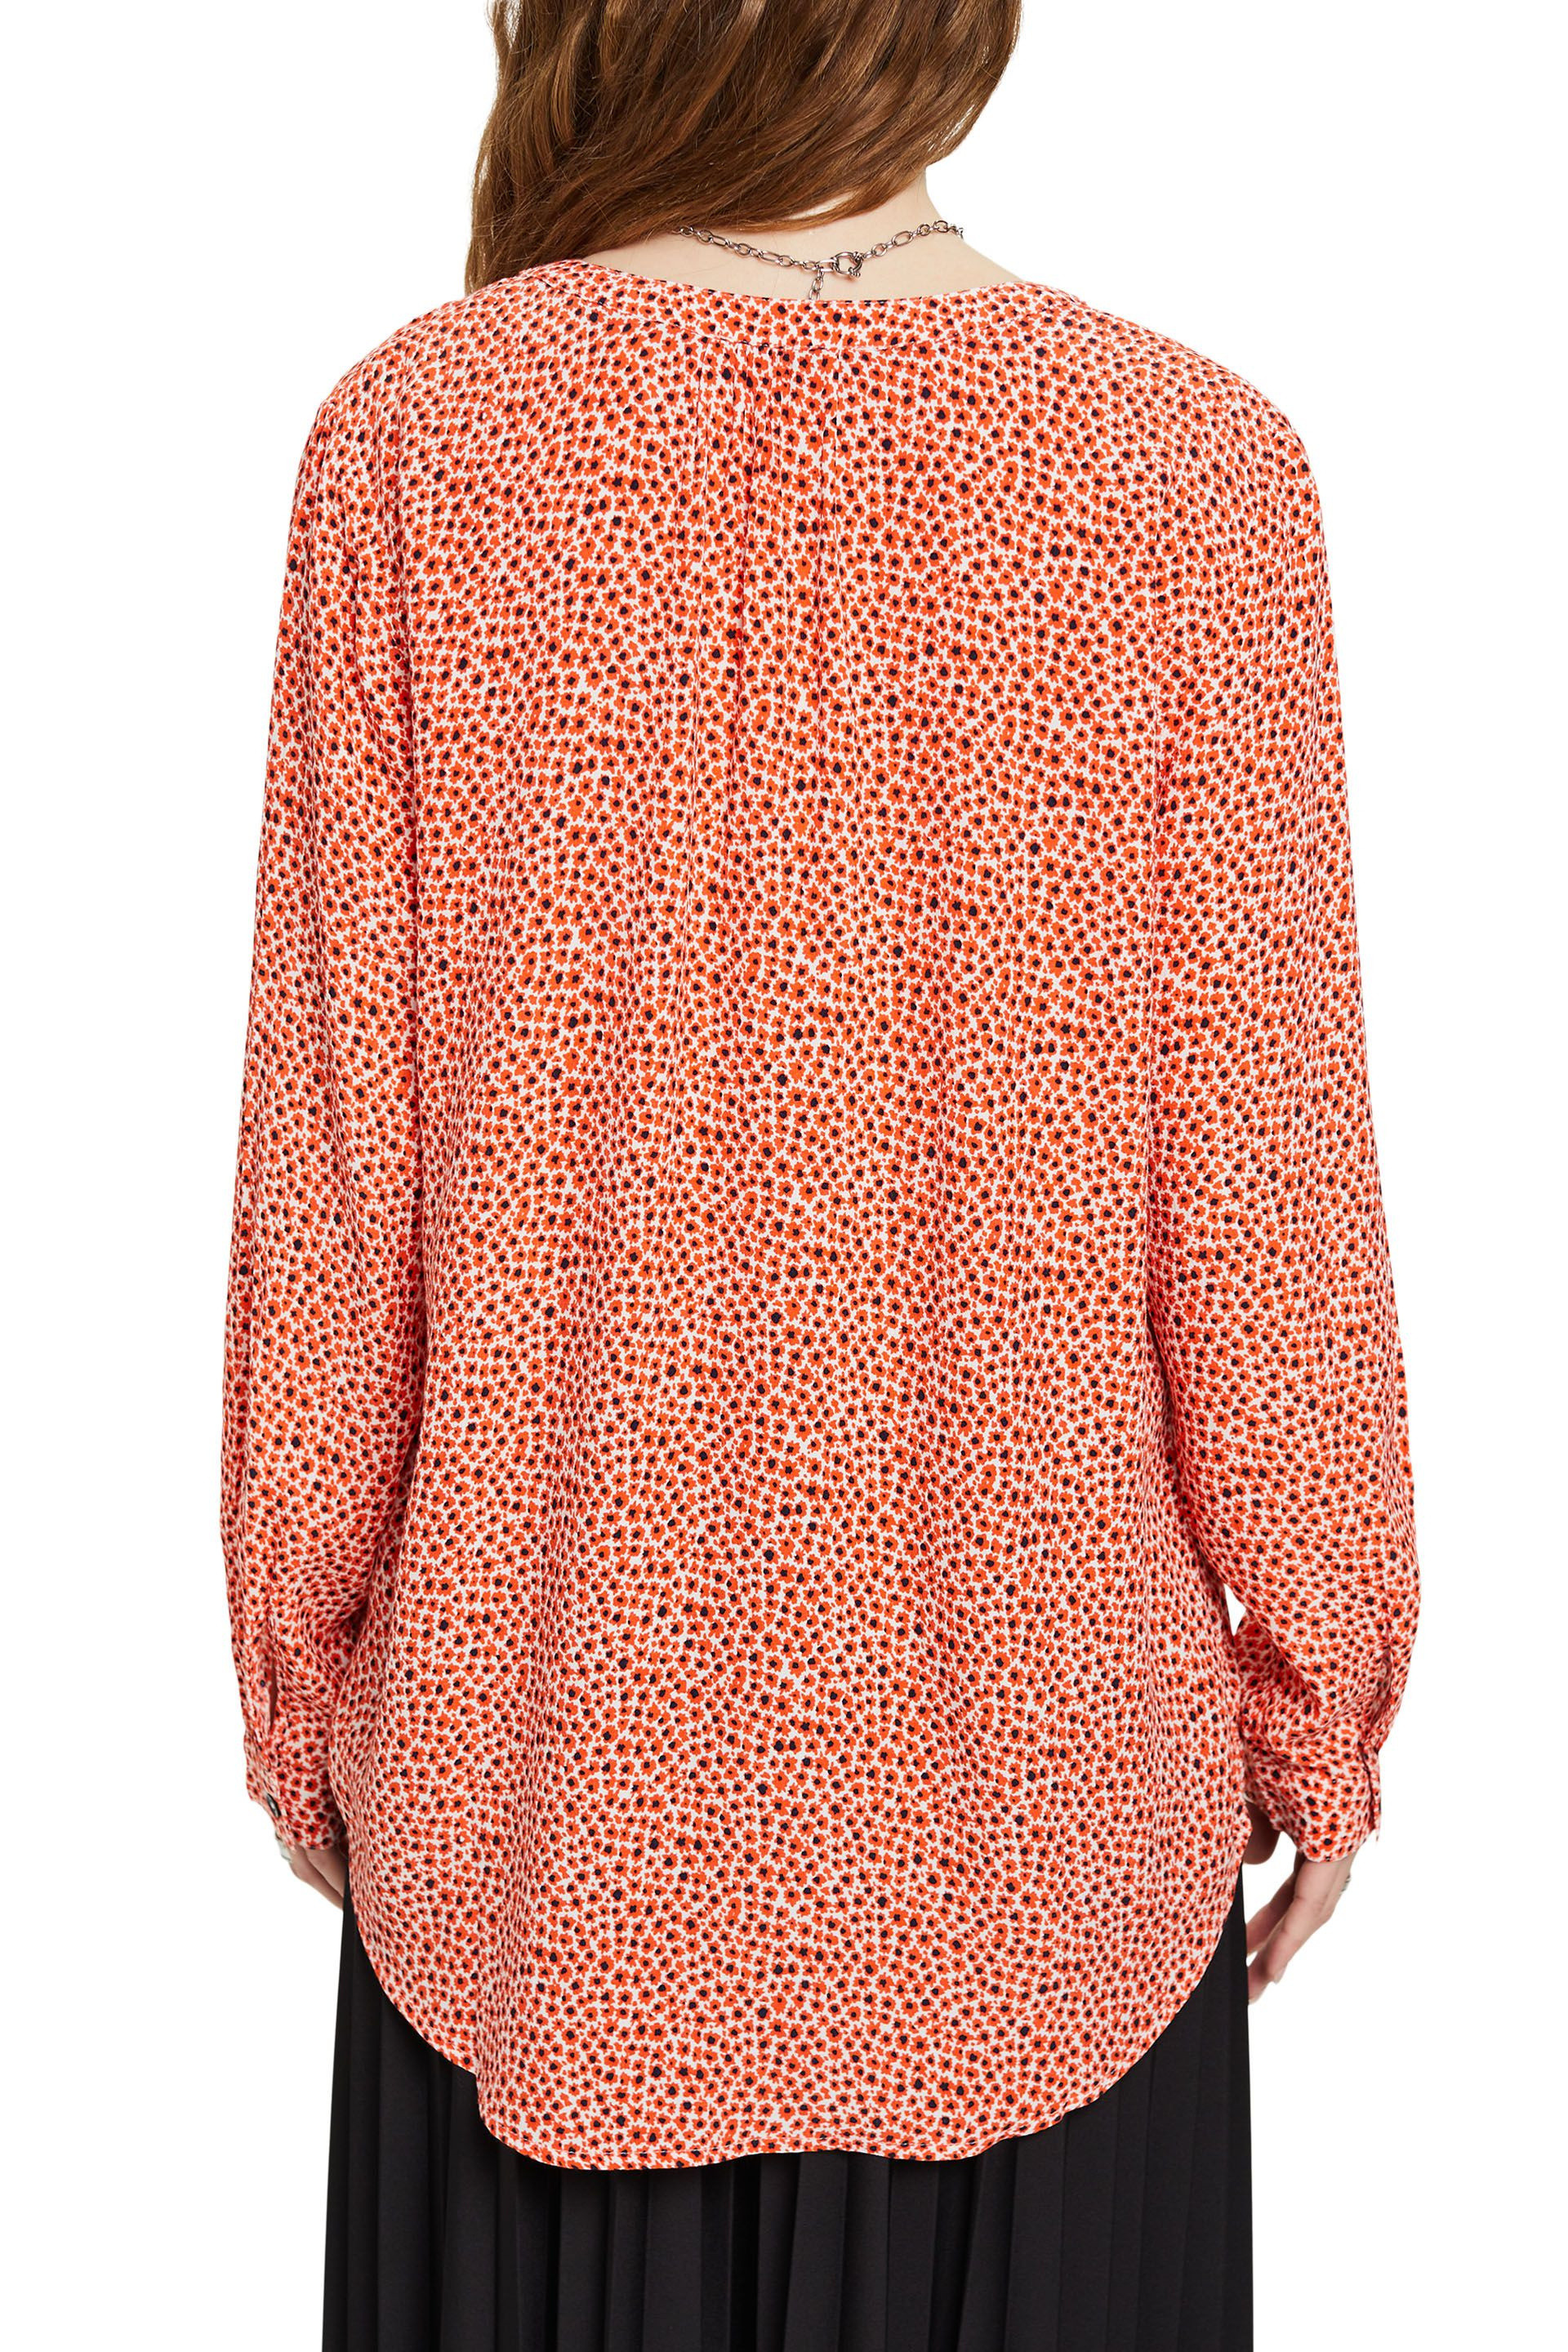 Esprit - Camicia floreale con scollo a V, Arancione, large image number 3